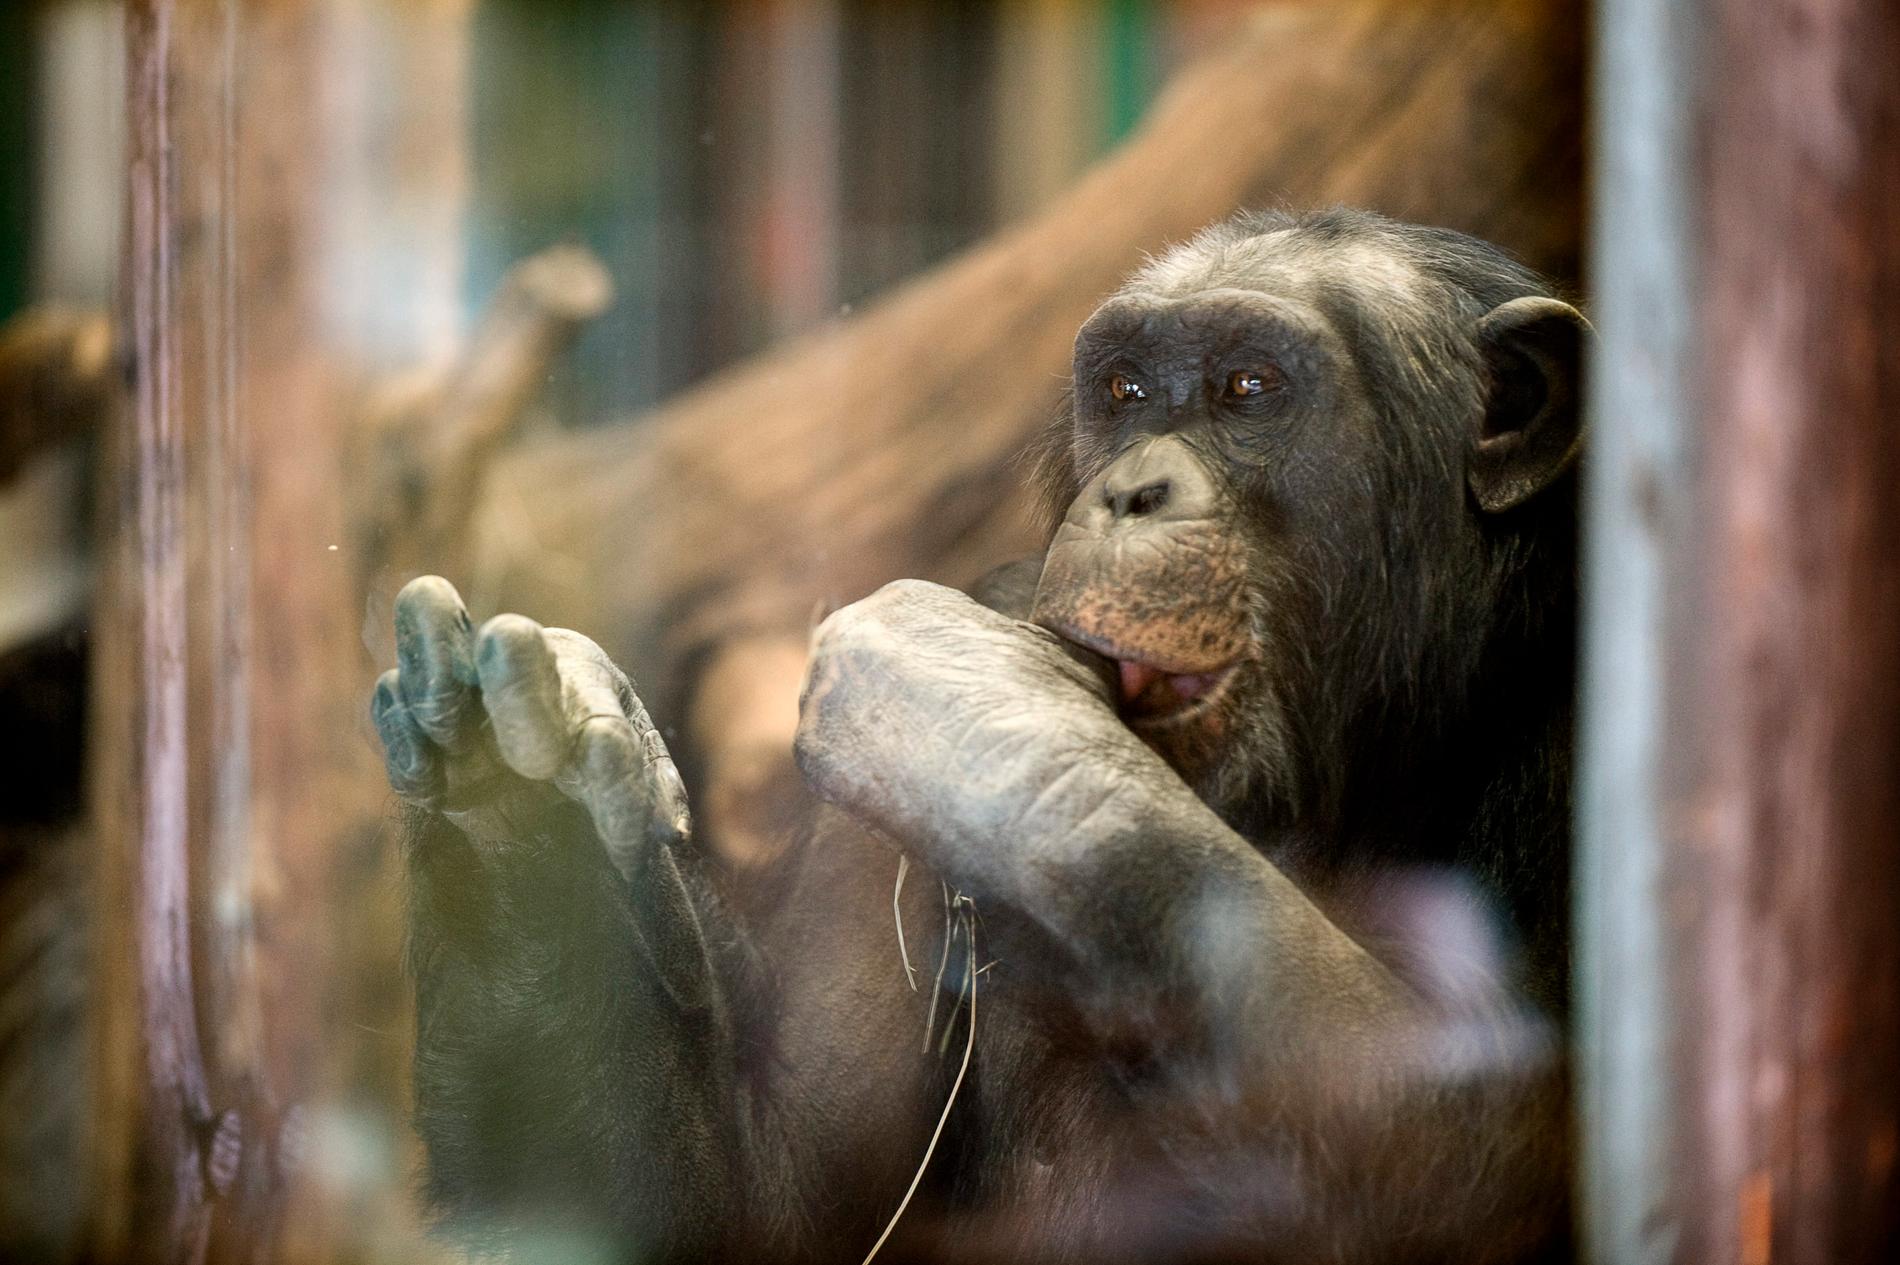 Santino, en av schimpanserna i Furuvik. Obs arkivbild. Det är oklart hur det gått för Santino.